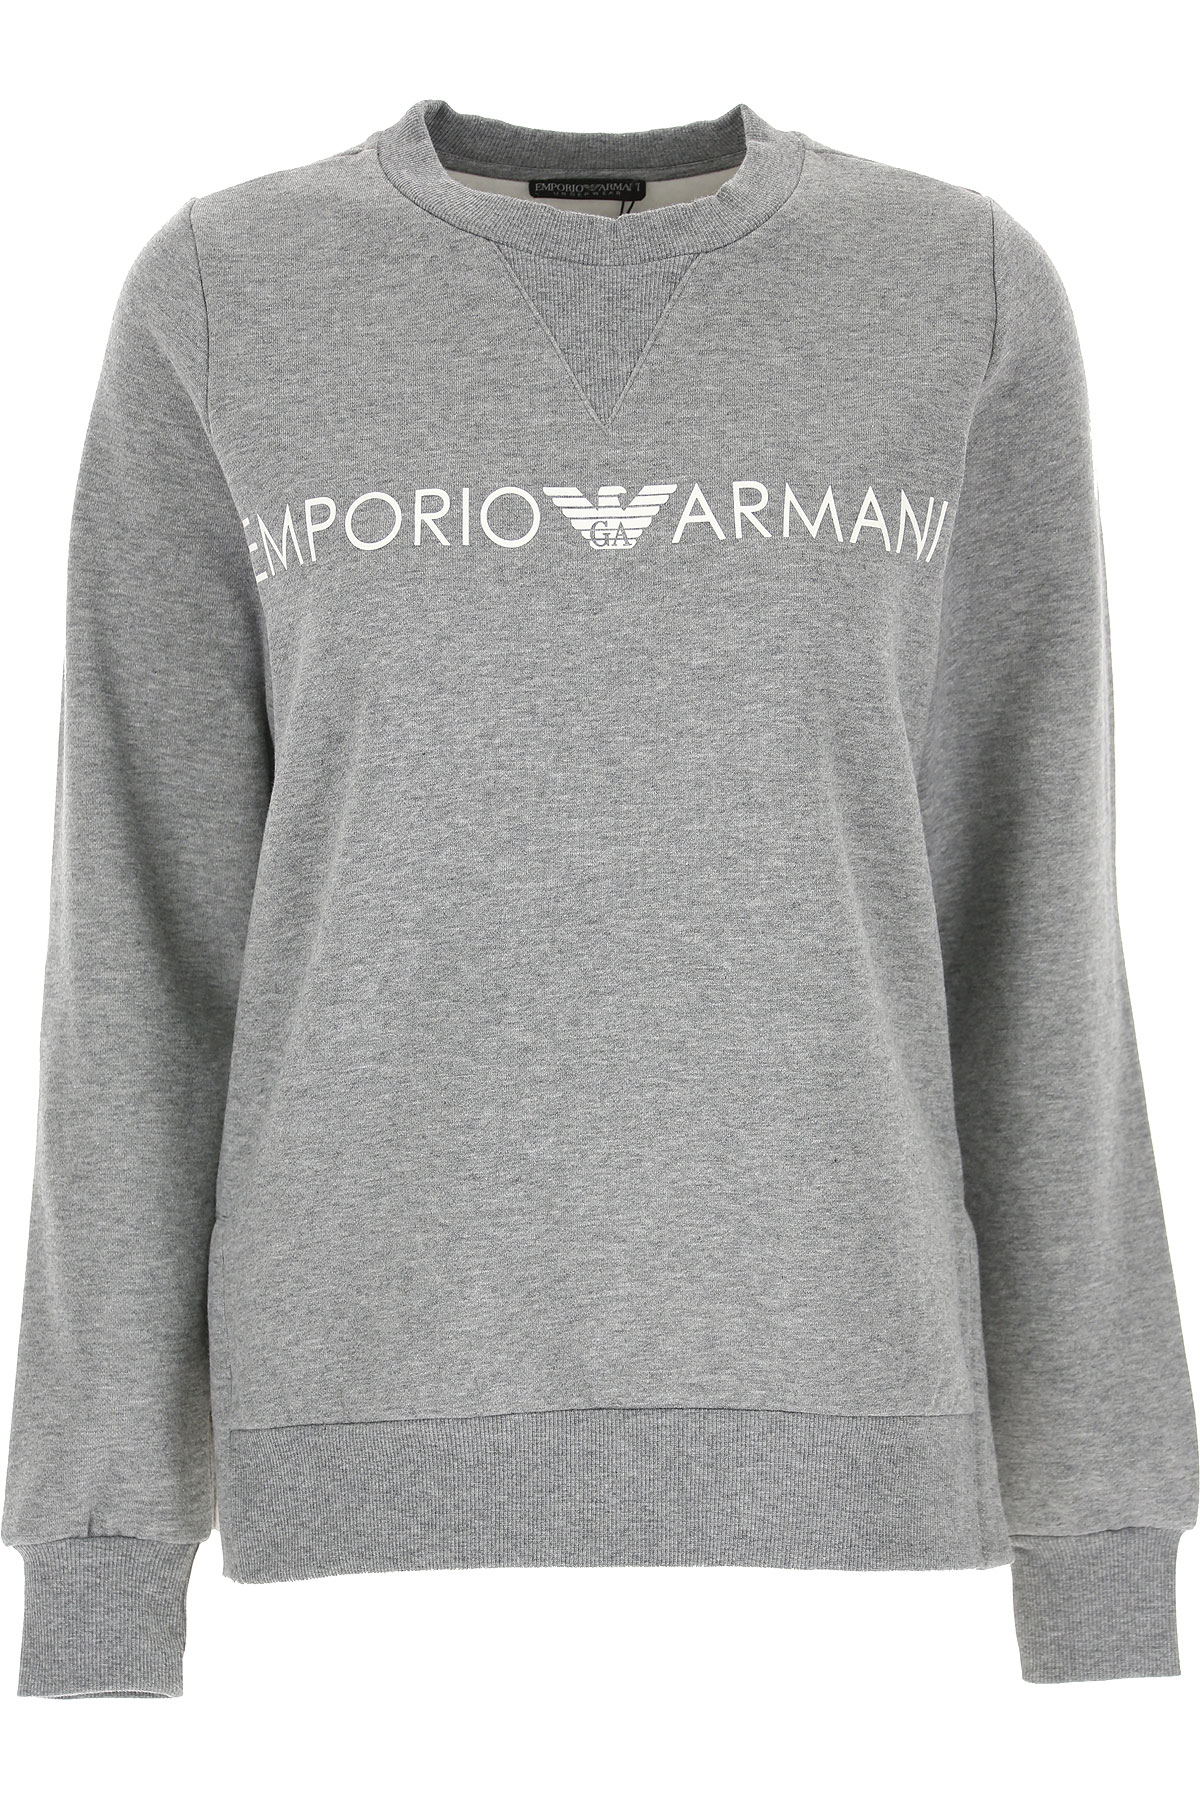 Emporio Armani Sweatshirt für Damen, Kapuzenpulli, Hoodie, Sweats Günstig im Sale, Dunkelgrau Melange, Baumwolle, 2017, 38 46 M